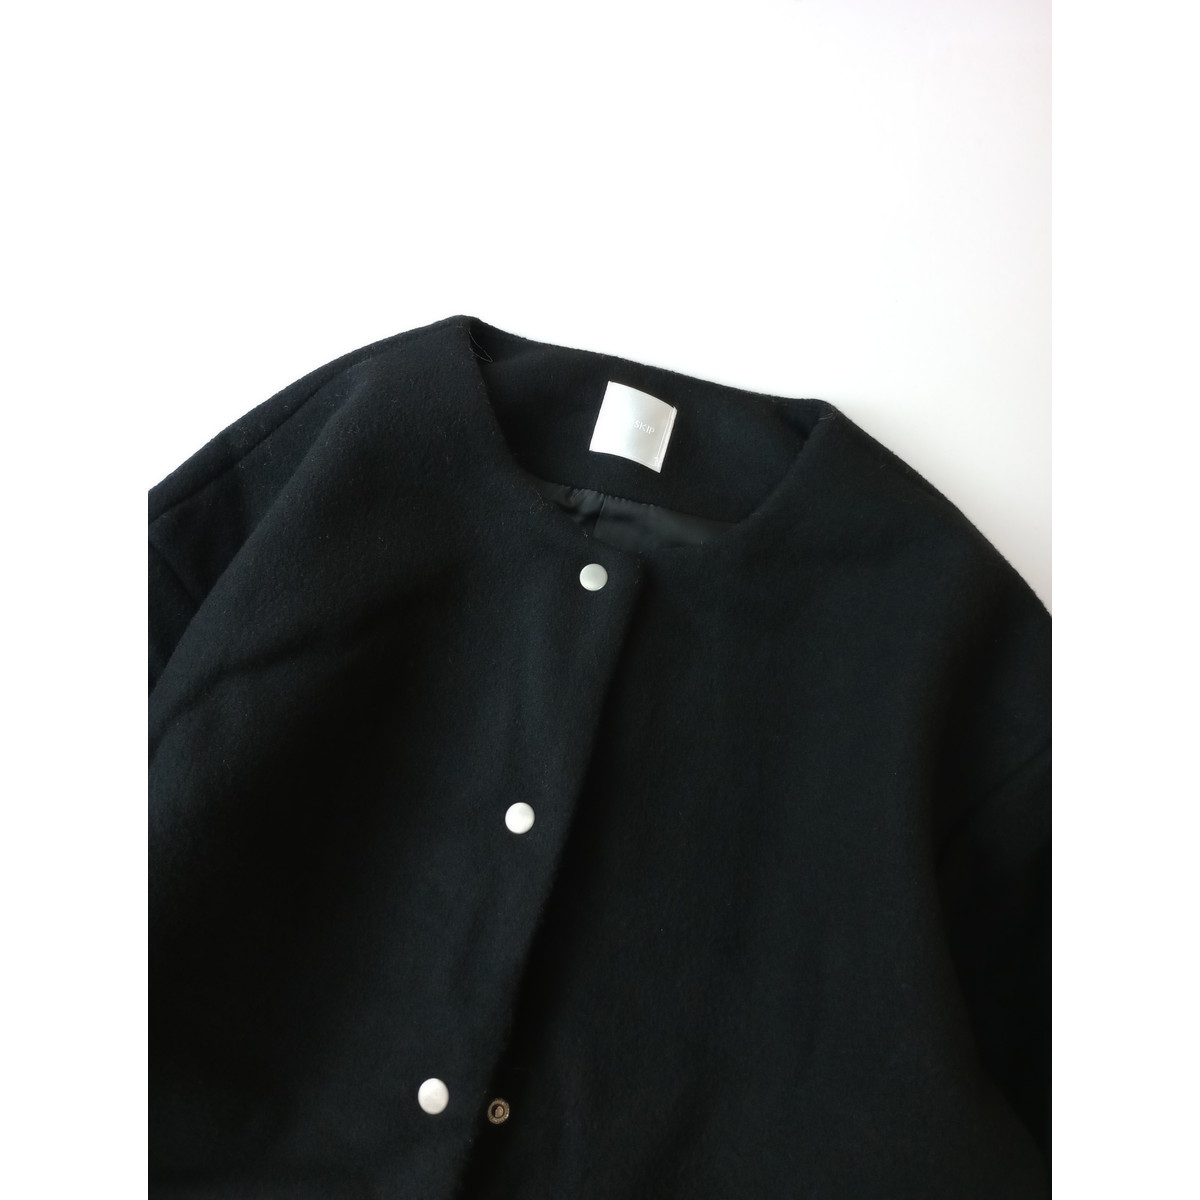 DRESKIP ドレスキップ 私を上品に印象付ける ショート丈 コート ジャケット 黒 ブラック L (BS+2946)_画像2